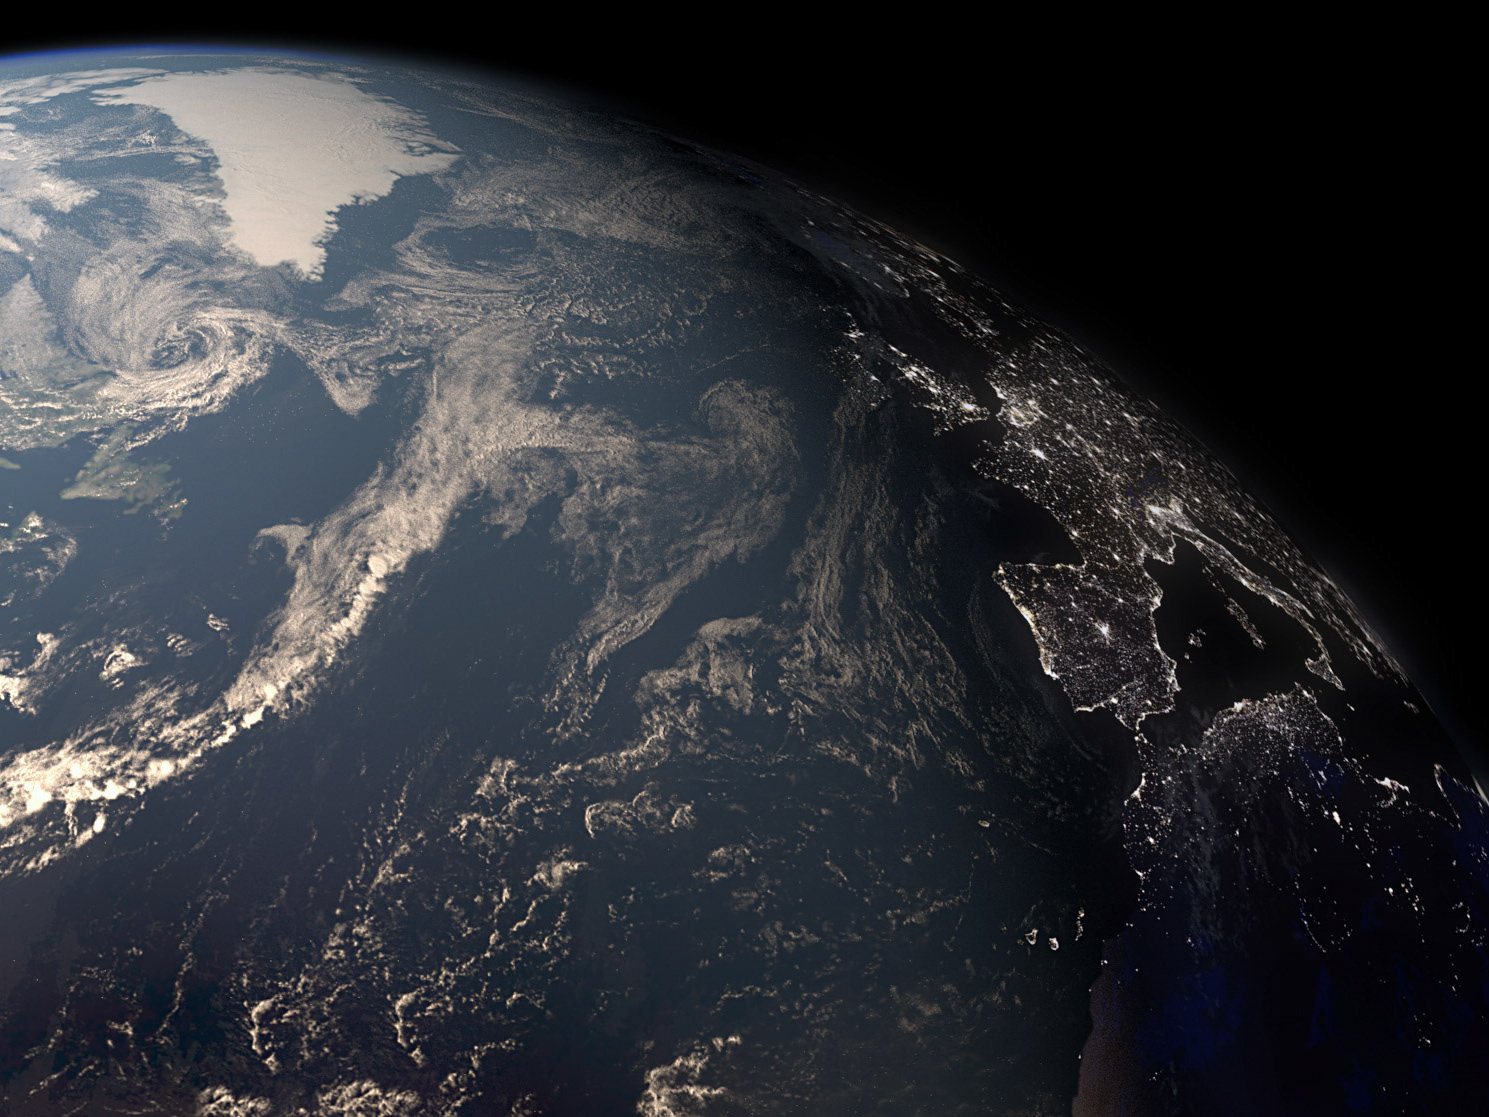 Картинка планета земля из космоса. Земля из космоса. Вид земли из космоса. Снимки планеты земля из космоса. Реальные снимки земли из космоса.